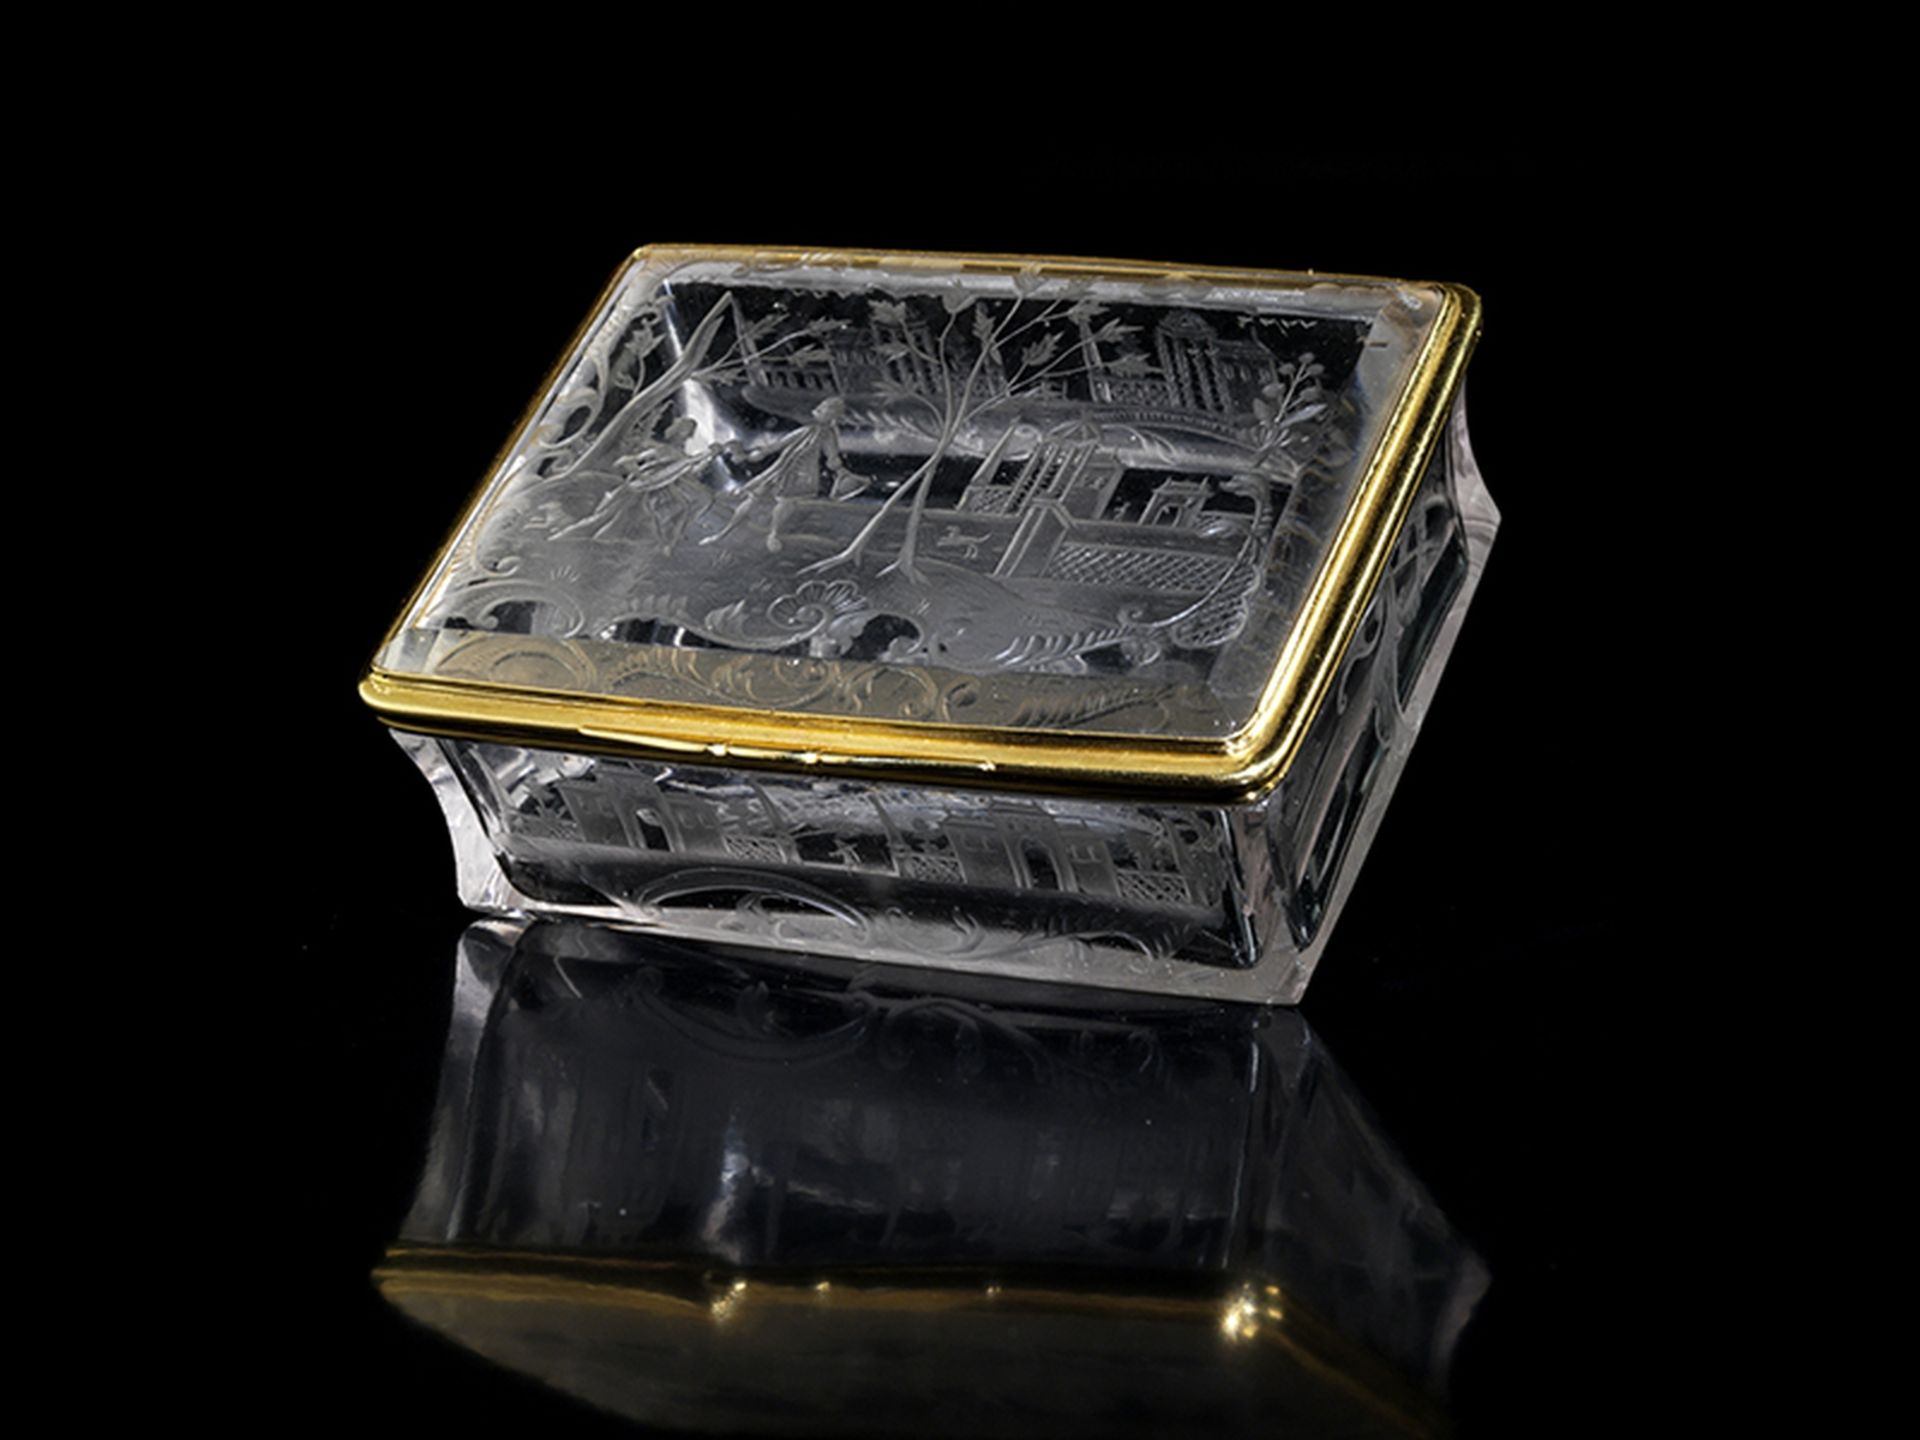 Barocke Bergkristalldose 3,3 x 8,3 x 6,2 cm. Gewicht: 160 g. Deutschland, um 1735/40. - Bild 4 aus 4